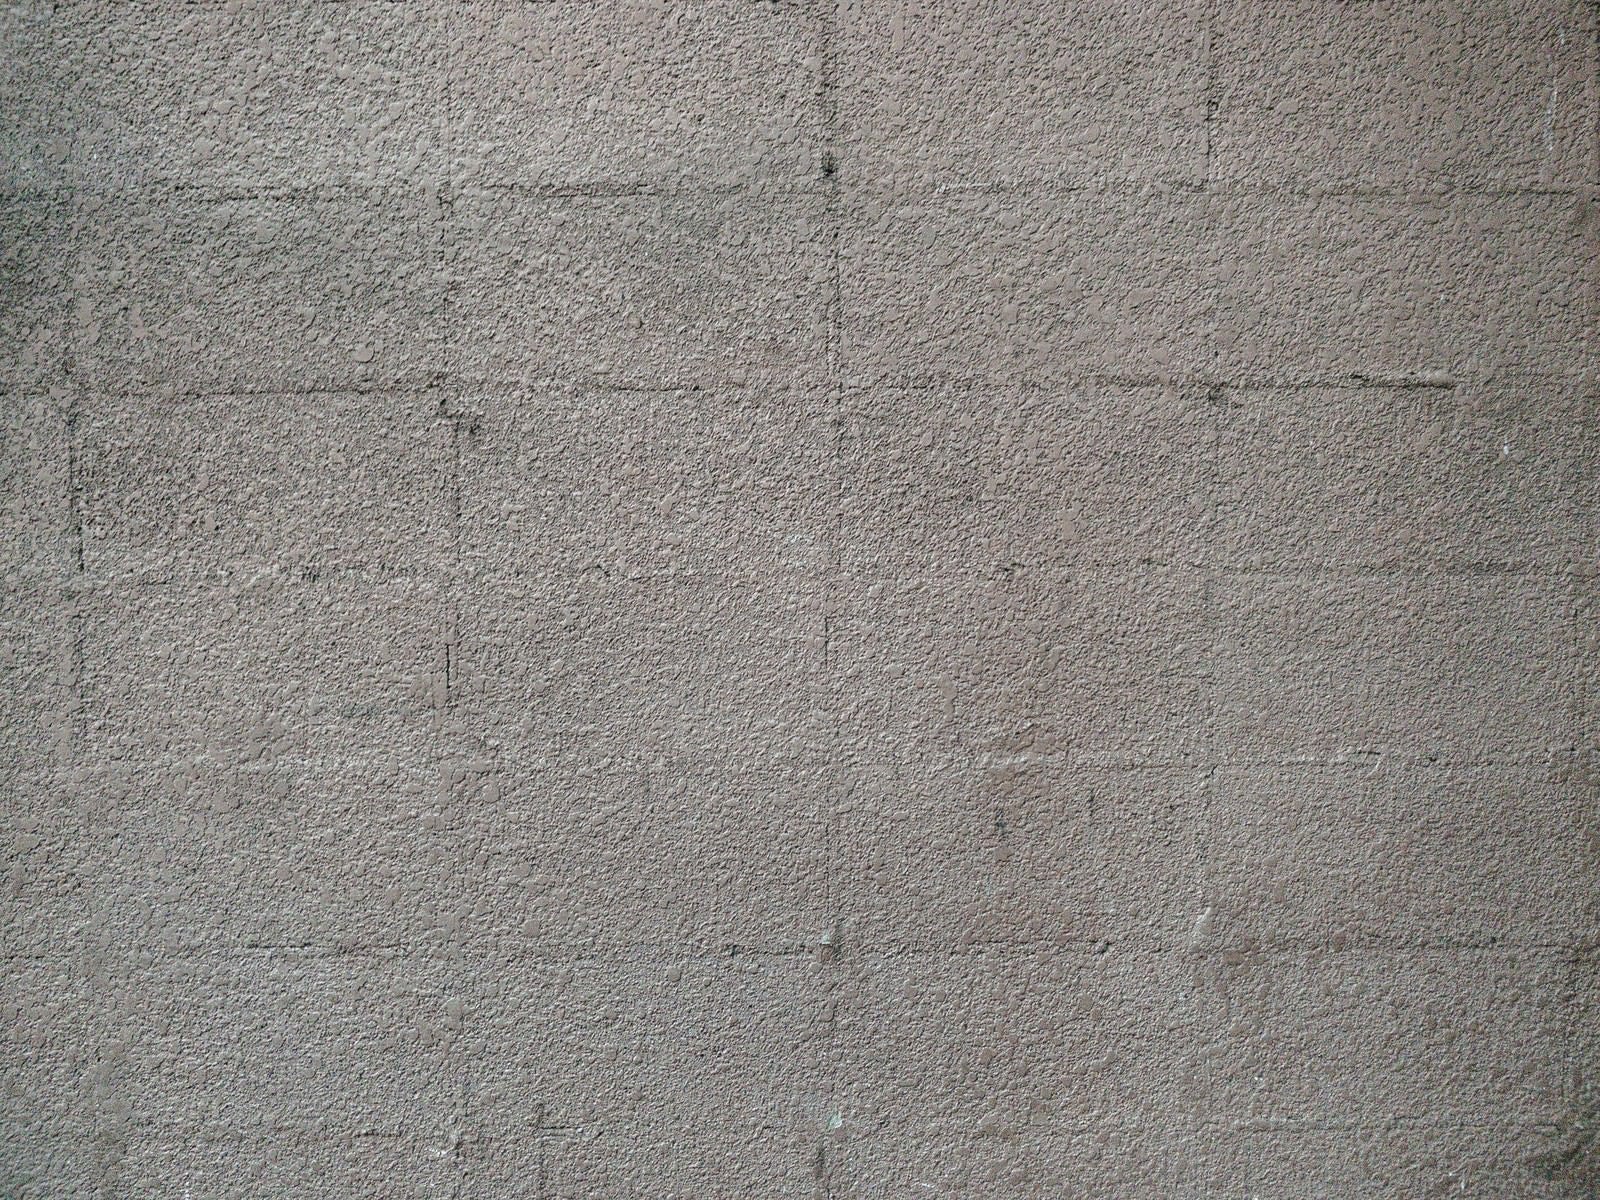 「ブロック塀のテクスチャー」の写真